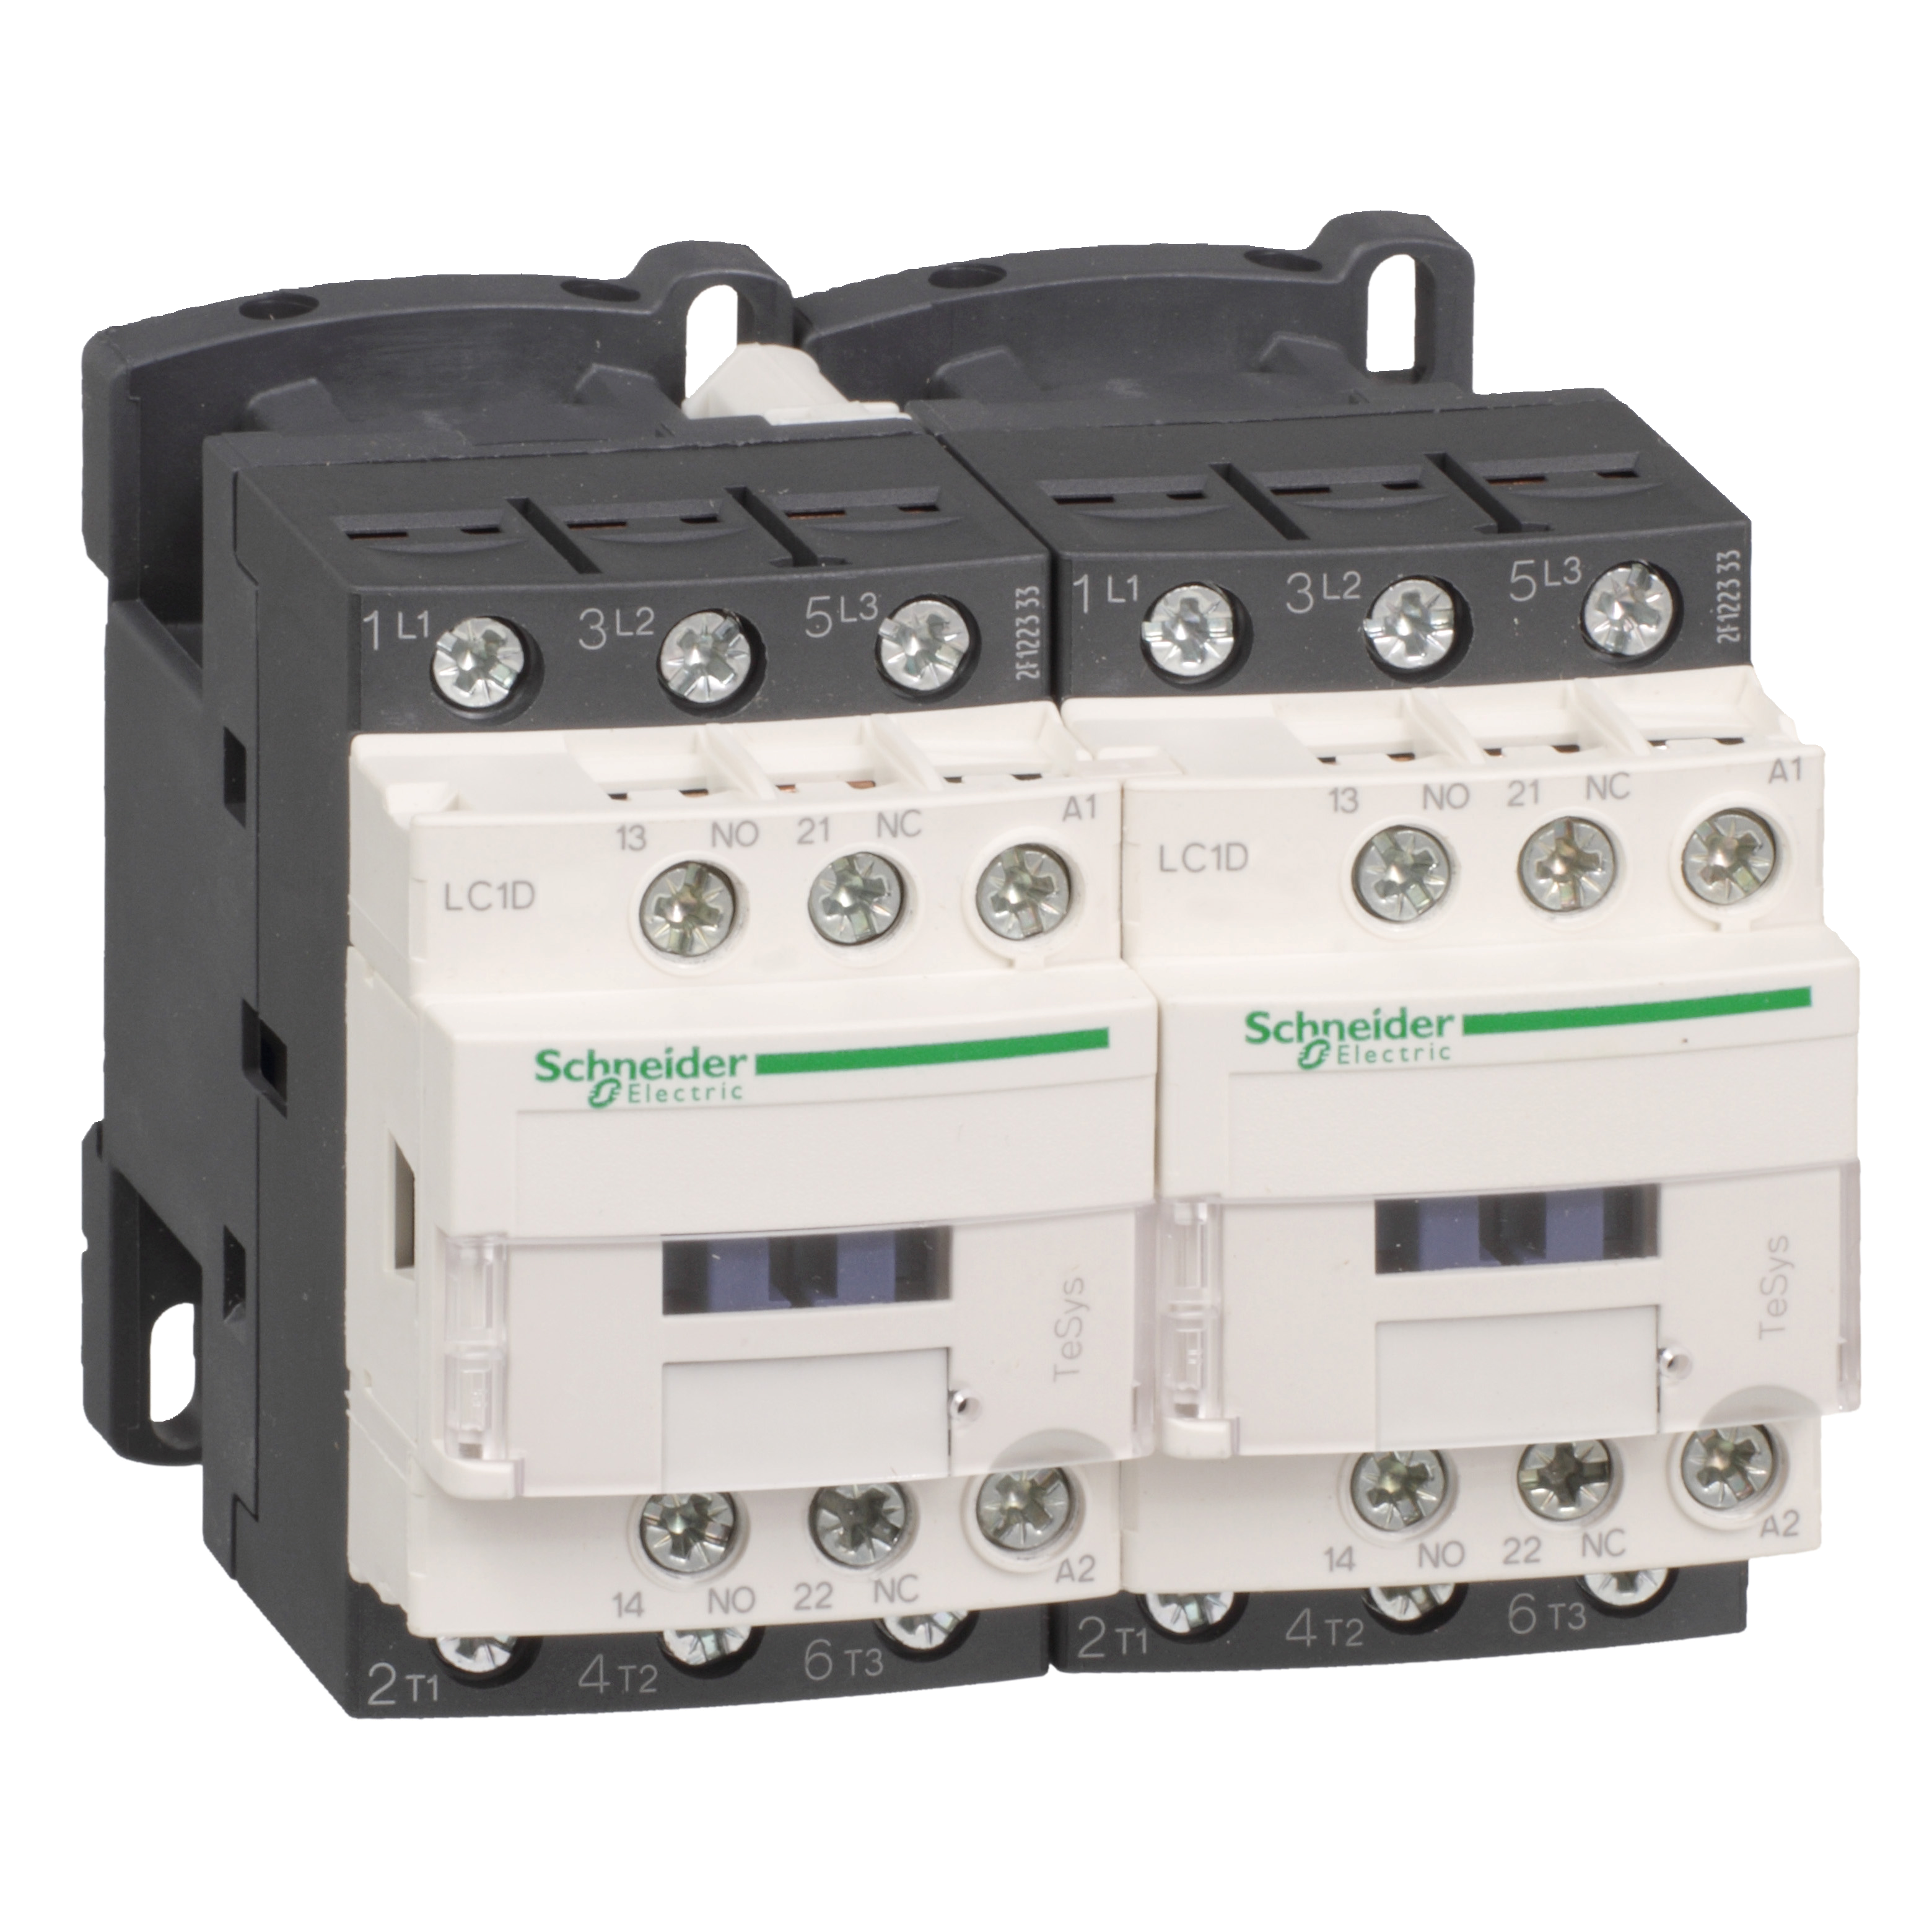 Kontaktorski par za reverziranje, 9A (AC-3), 3P, kalem 220V AC, 1NC+1NO, blokada mehanicka bez elektricne 